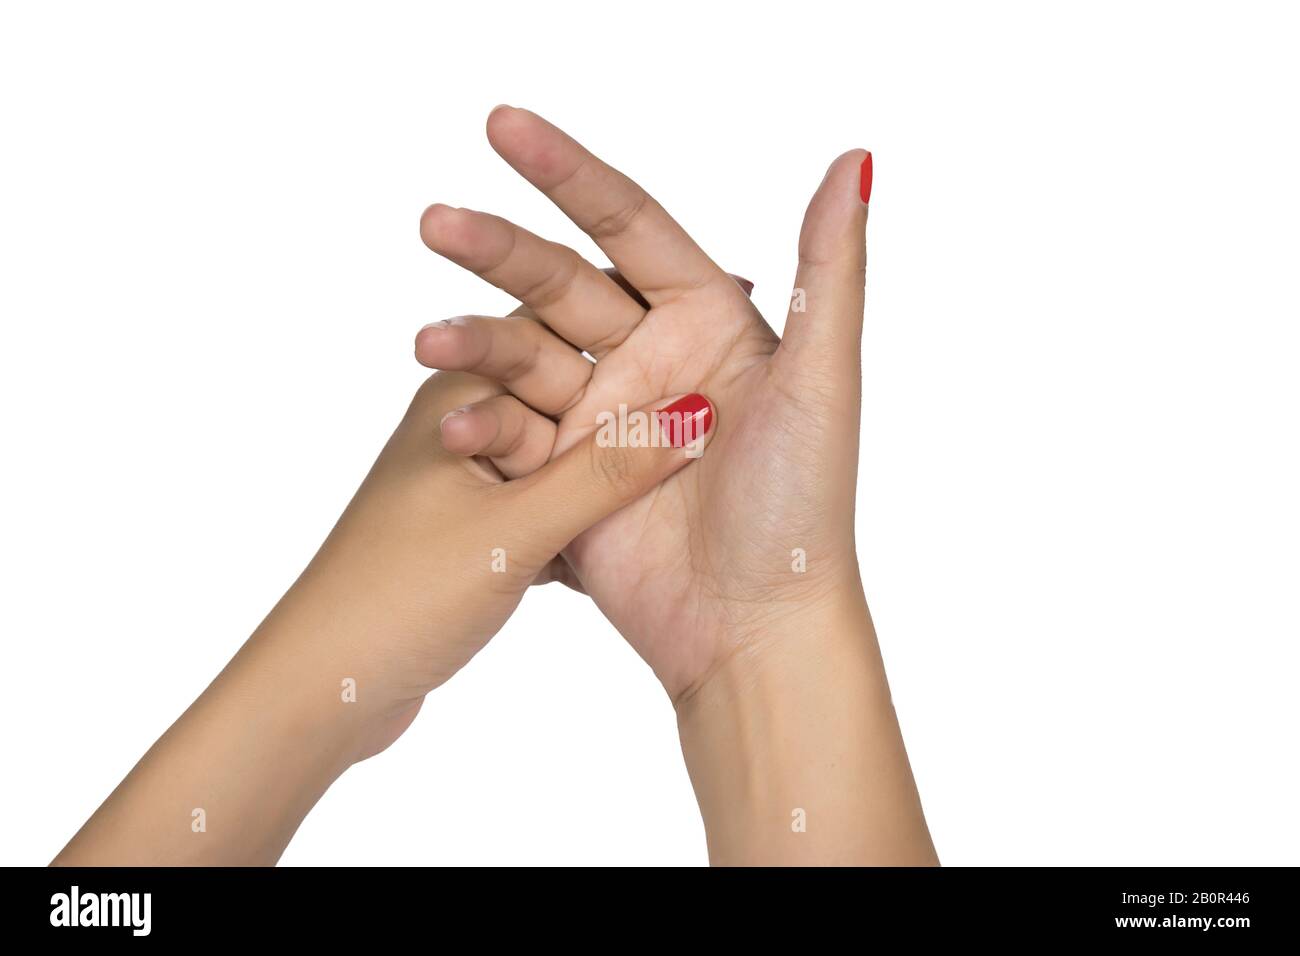 Mujer mano dedo con uña roja. Disparador manual bloqueo de dedo concepto sano fondo blanco Foto de stock